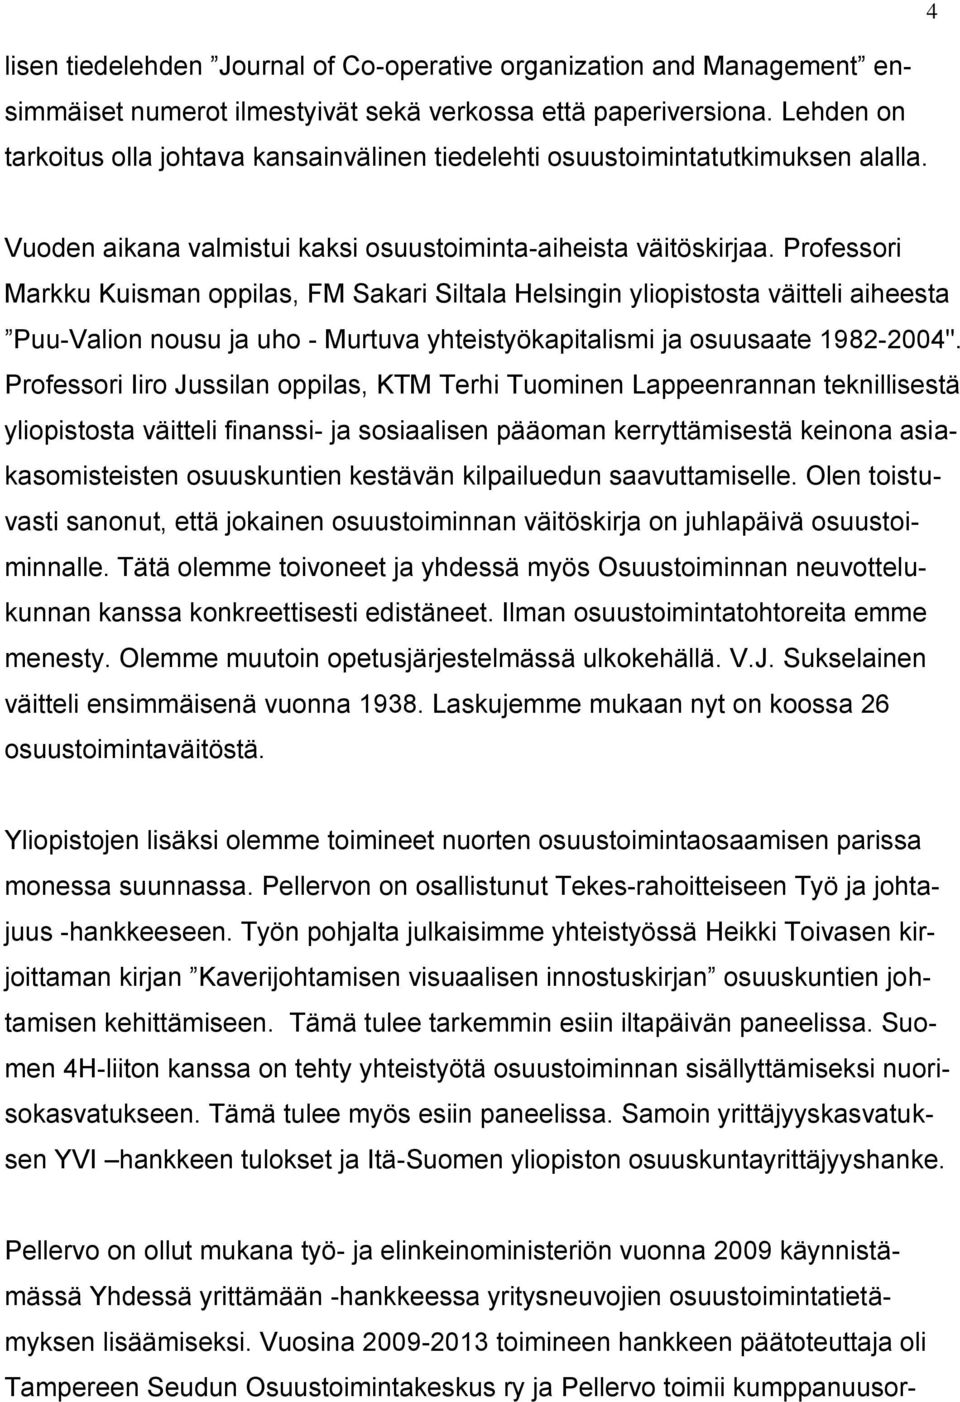 Professori Markku Kuisman oppilas, FM Sakari Siltala Helsingin yliopistosta väitteli aiheesta Puu-Valion nousu ja uho - Murtuva yhteistyökapitalismi ja osuusaate 1982-2004".